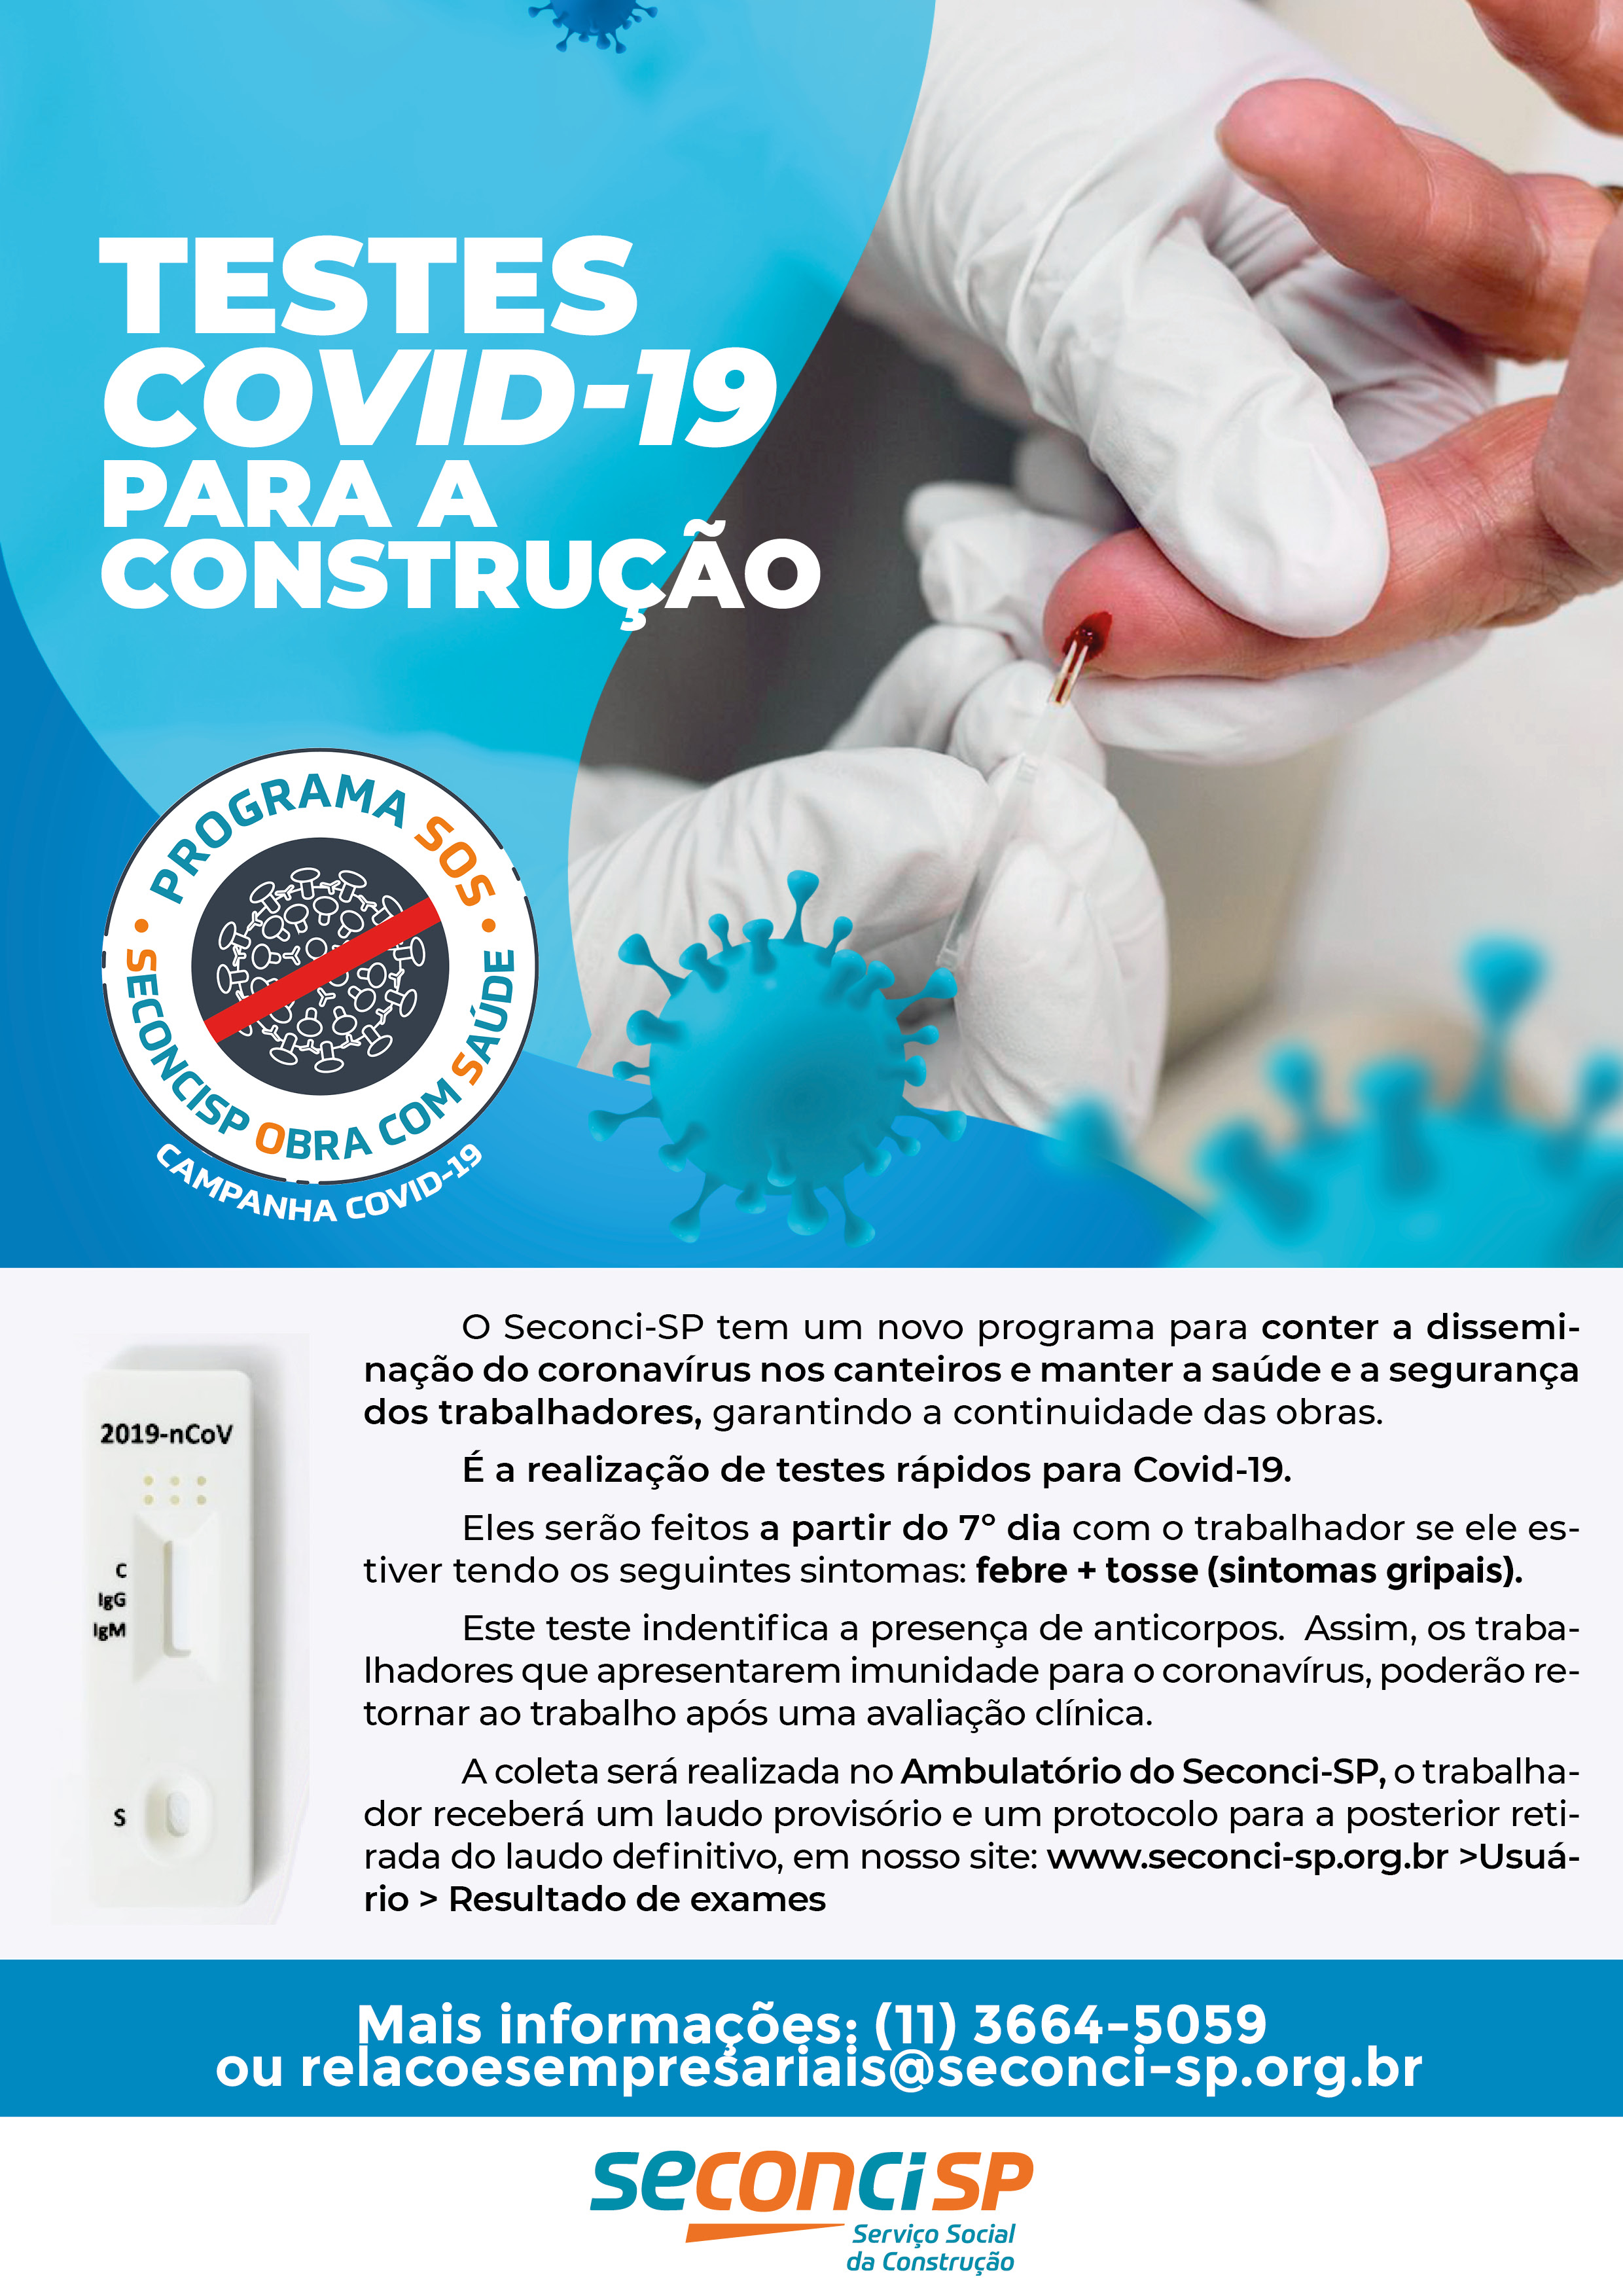 Testes COVID-19 em SP: Exames para coronavírus